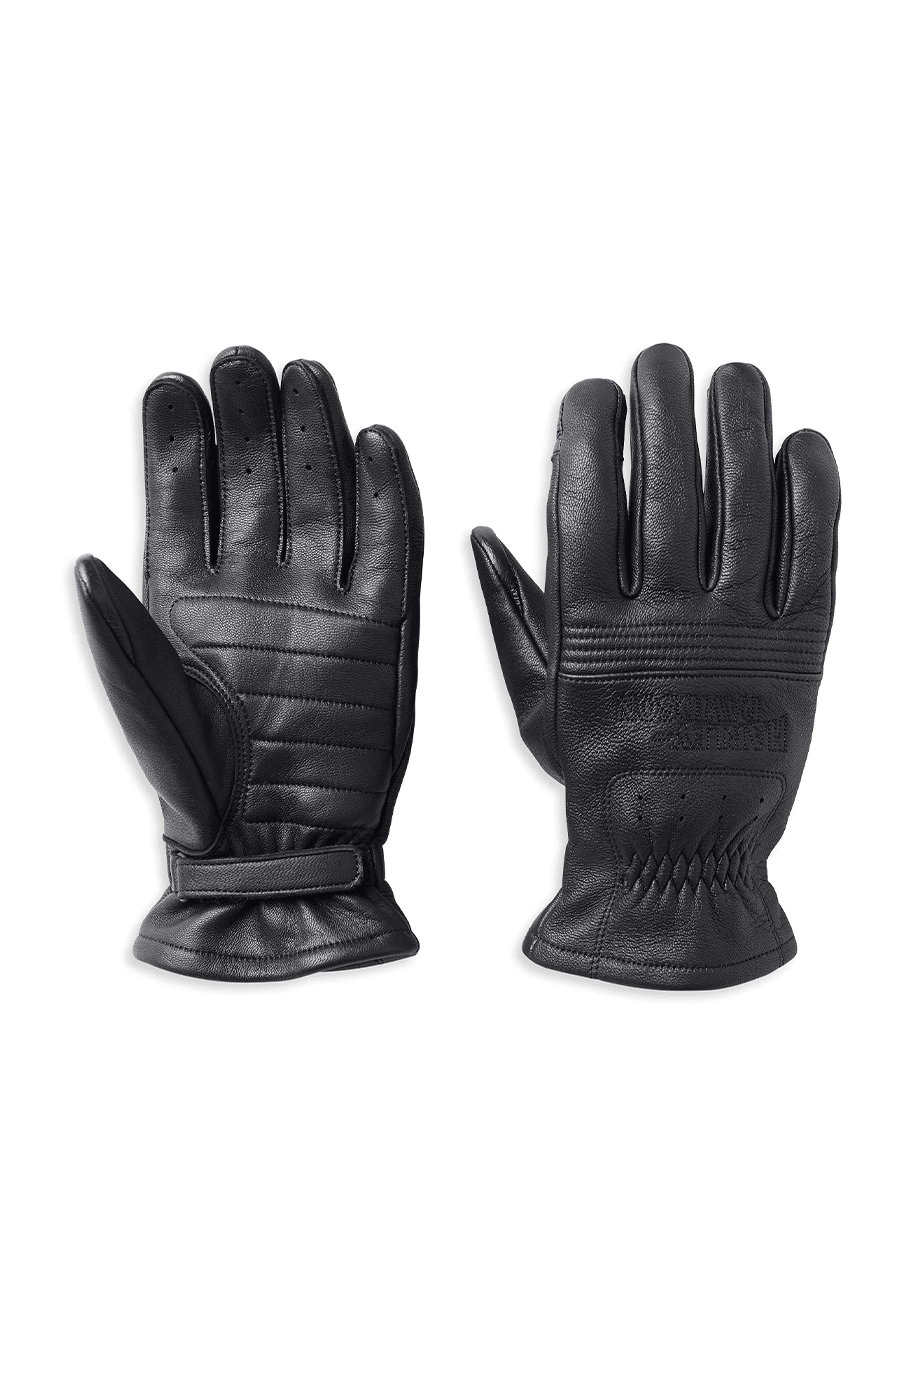 Harley-Davidson® Men's Big Sur Leather Gloves